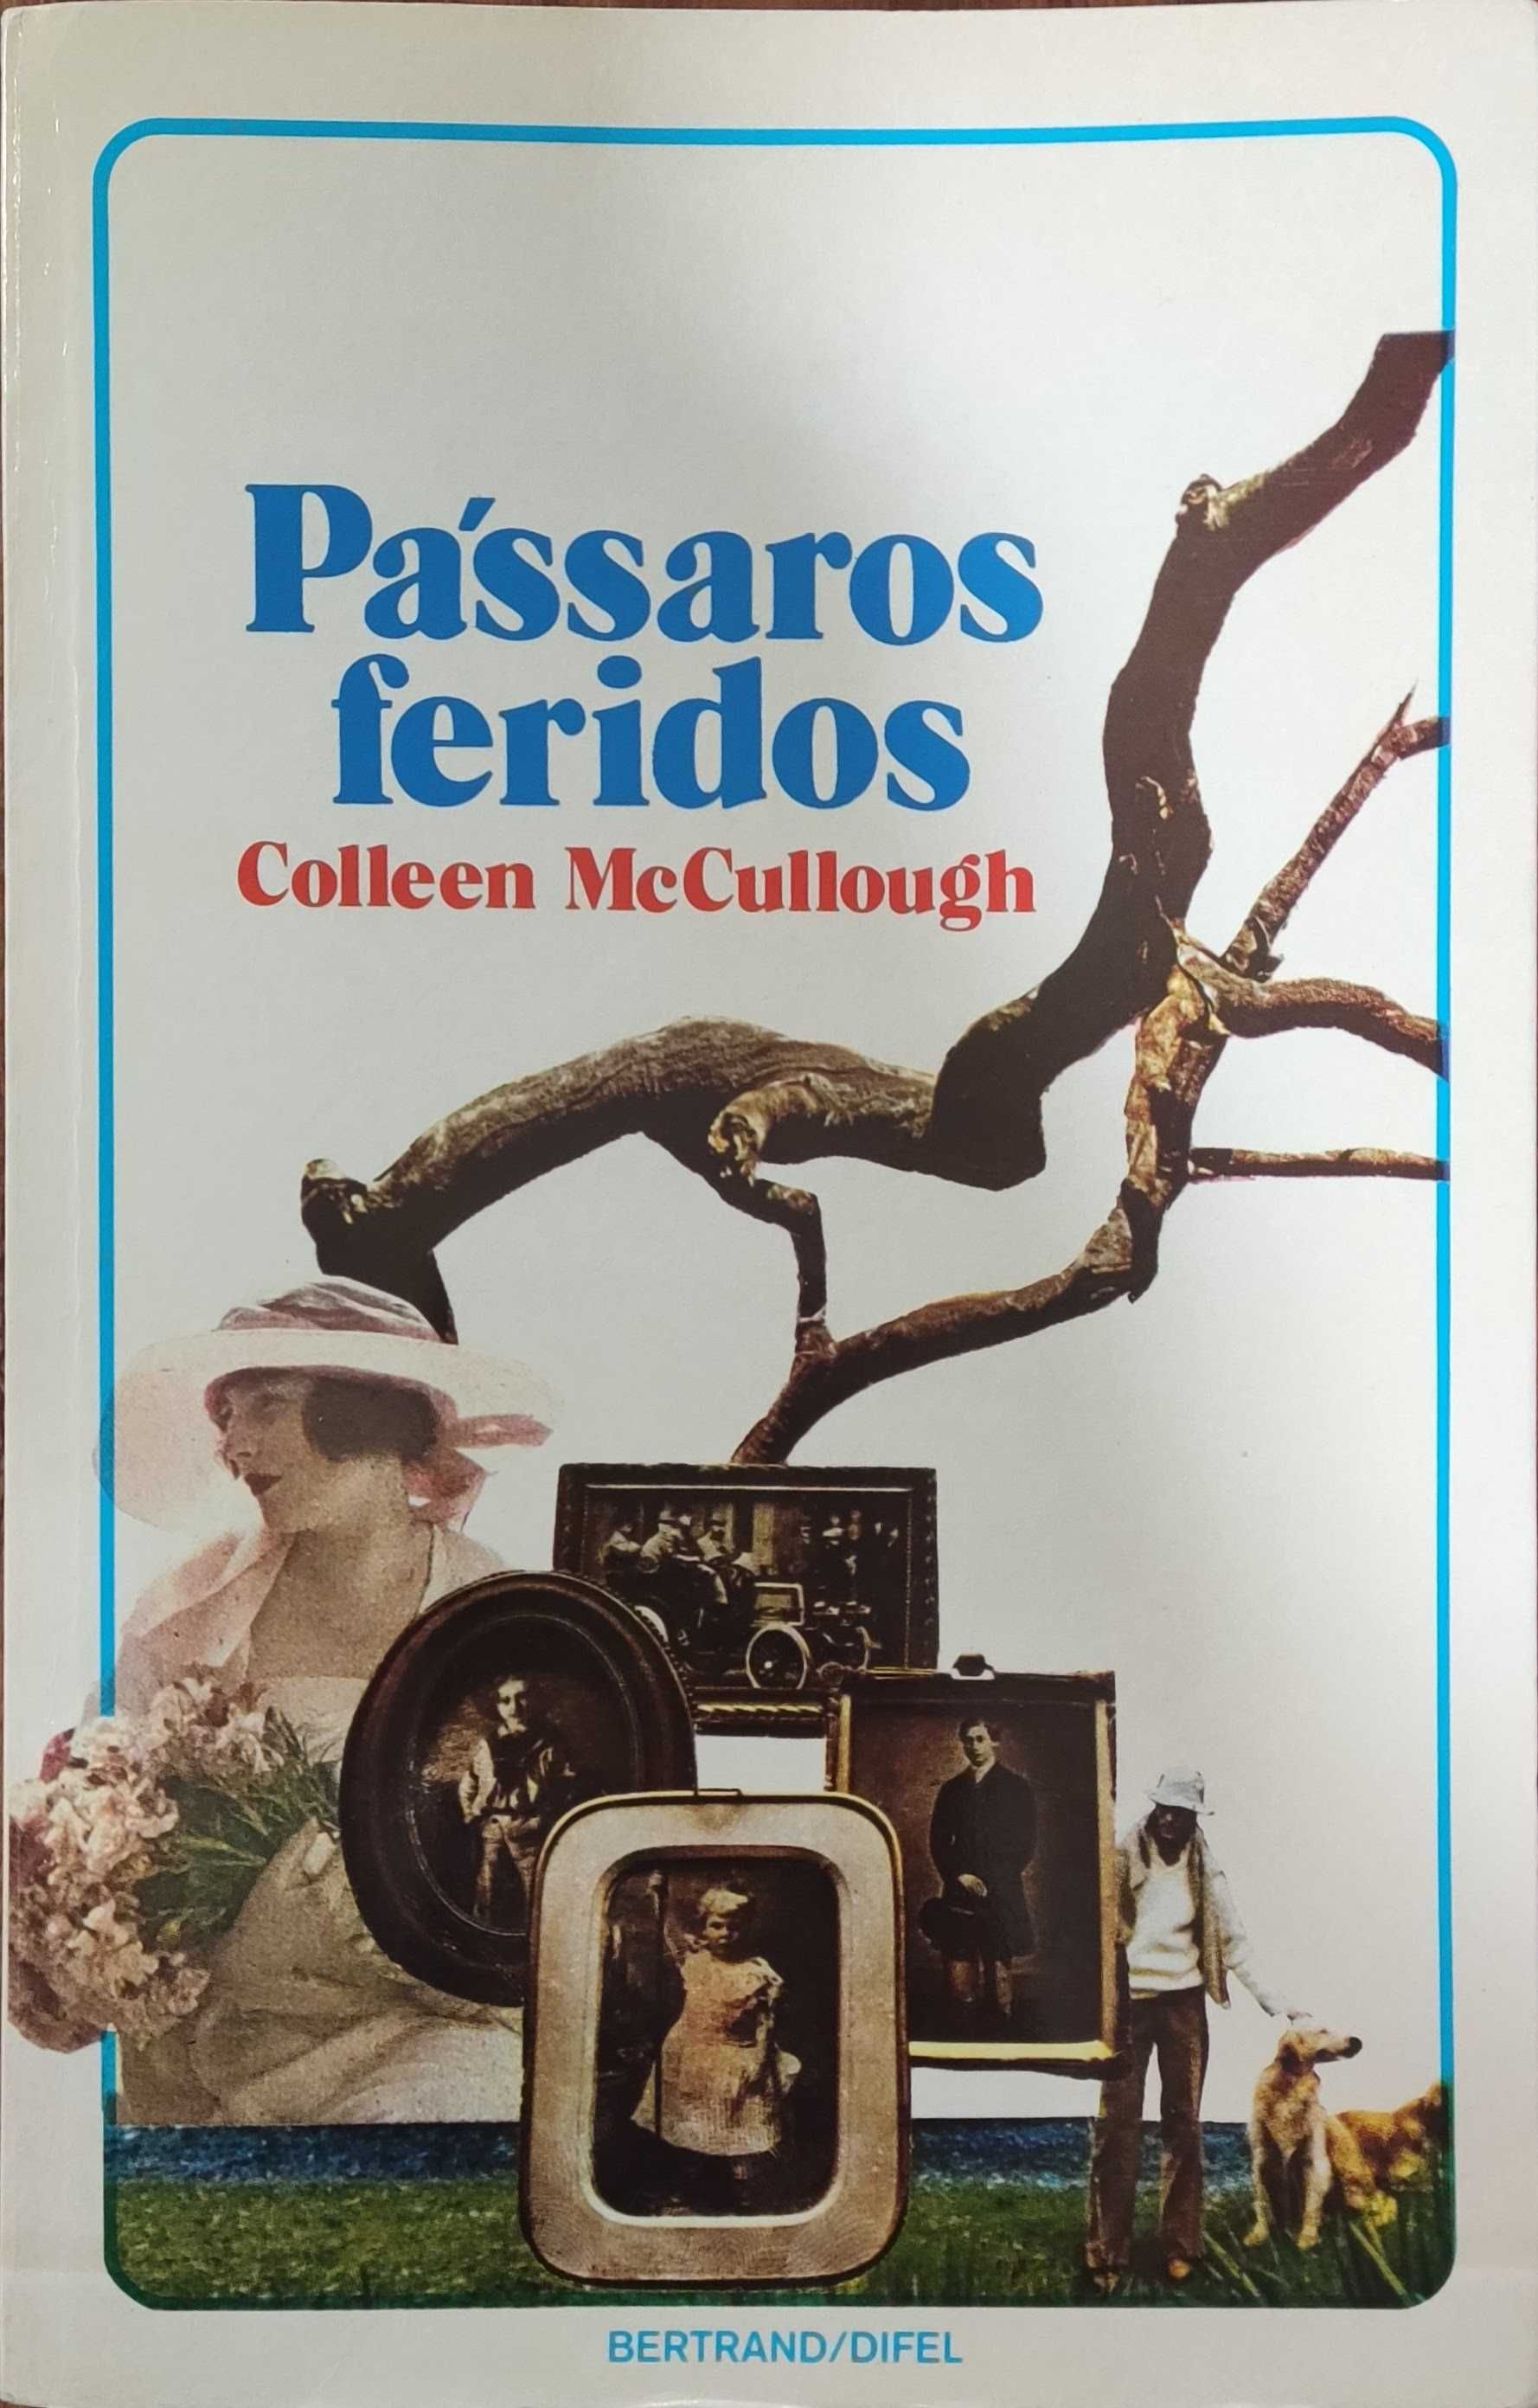 Livro "PÁSSAROS FERIDOS" de Coleen McCullough